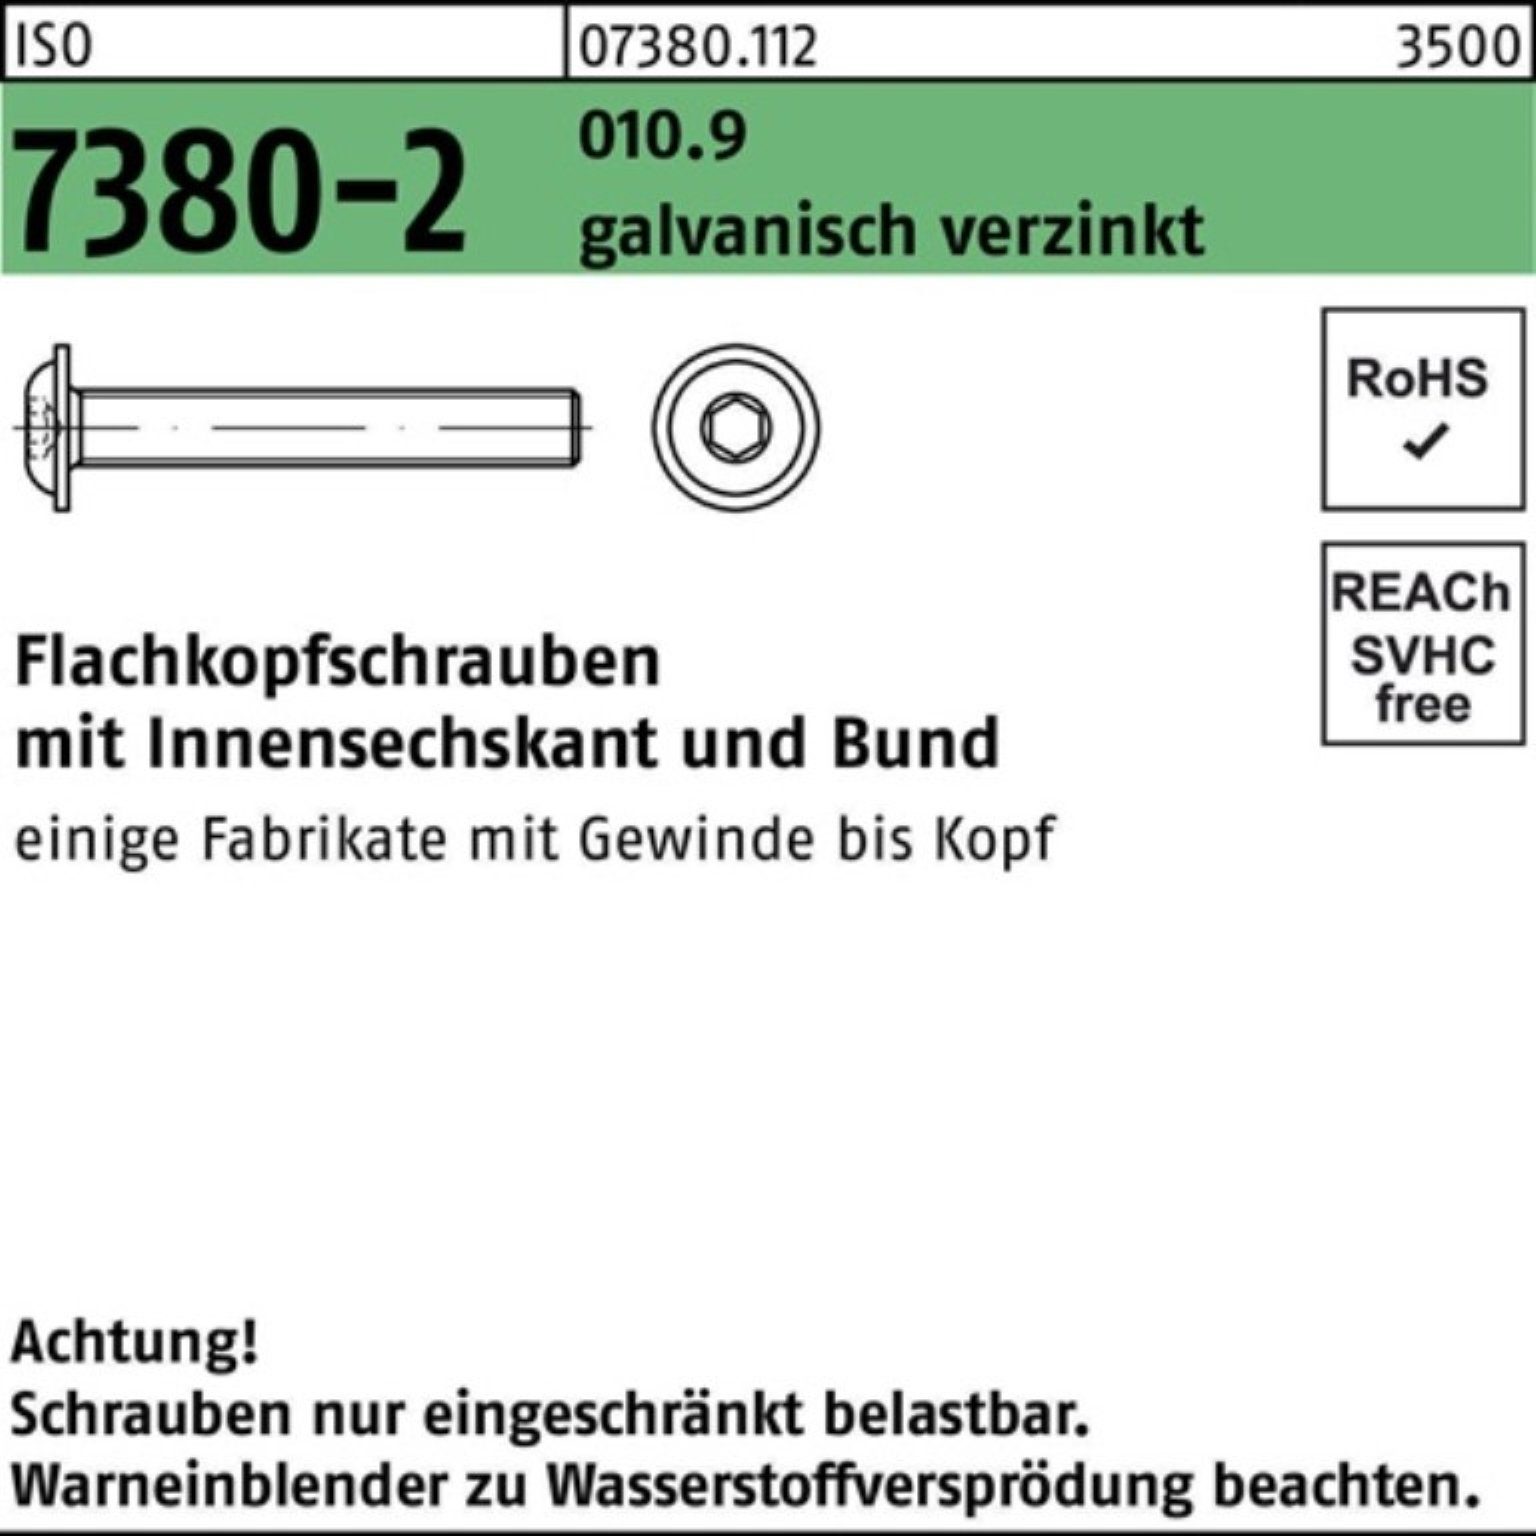 500er ISO Schraube Bund/Innen-6kt Flachkopfschraube Reyher Pack 7380-2 010.9 gal M4x10